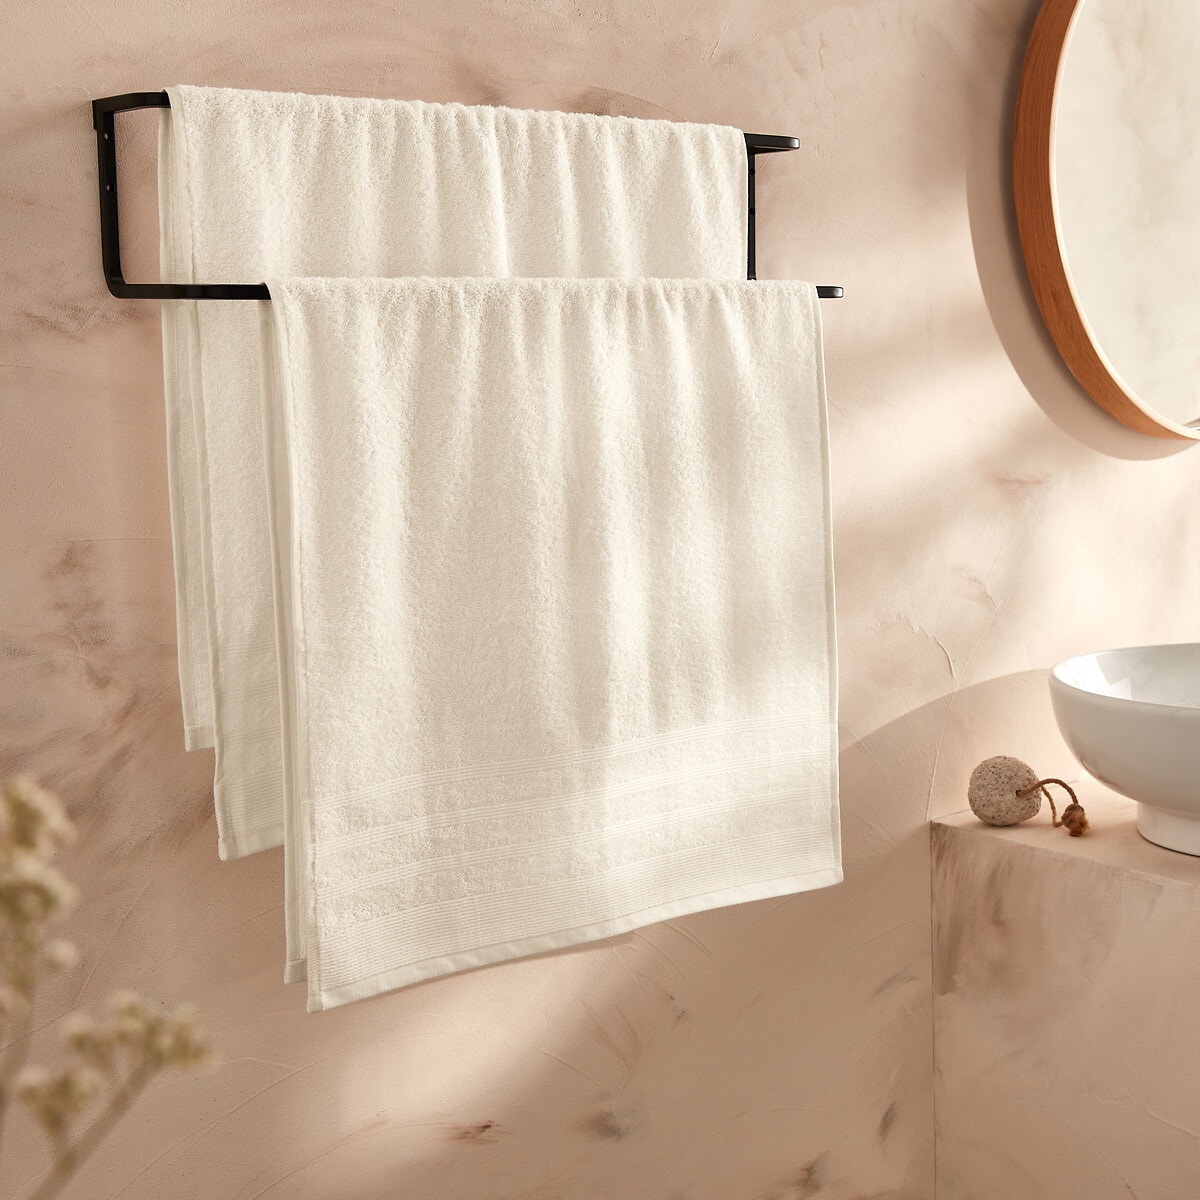 Σπίτι > Λευκά είδη > Μπάνιο > Πετσέτες προσώπου Πετσέτες (σετ των 2) 50x100 cm